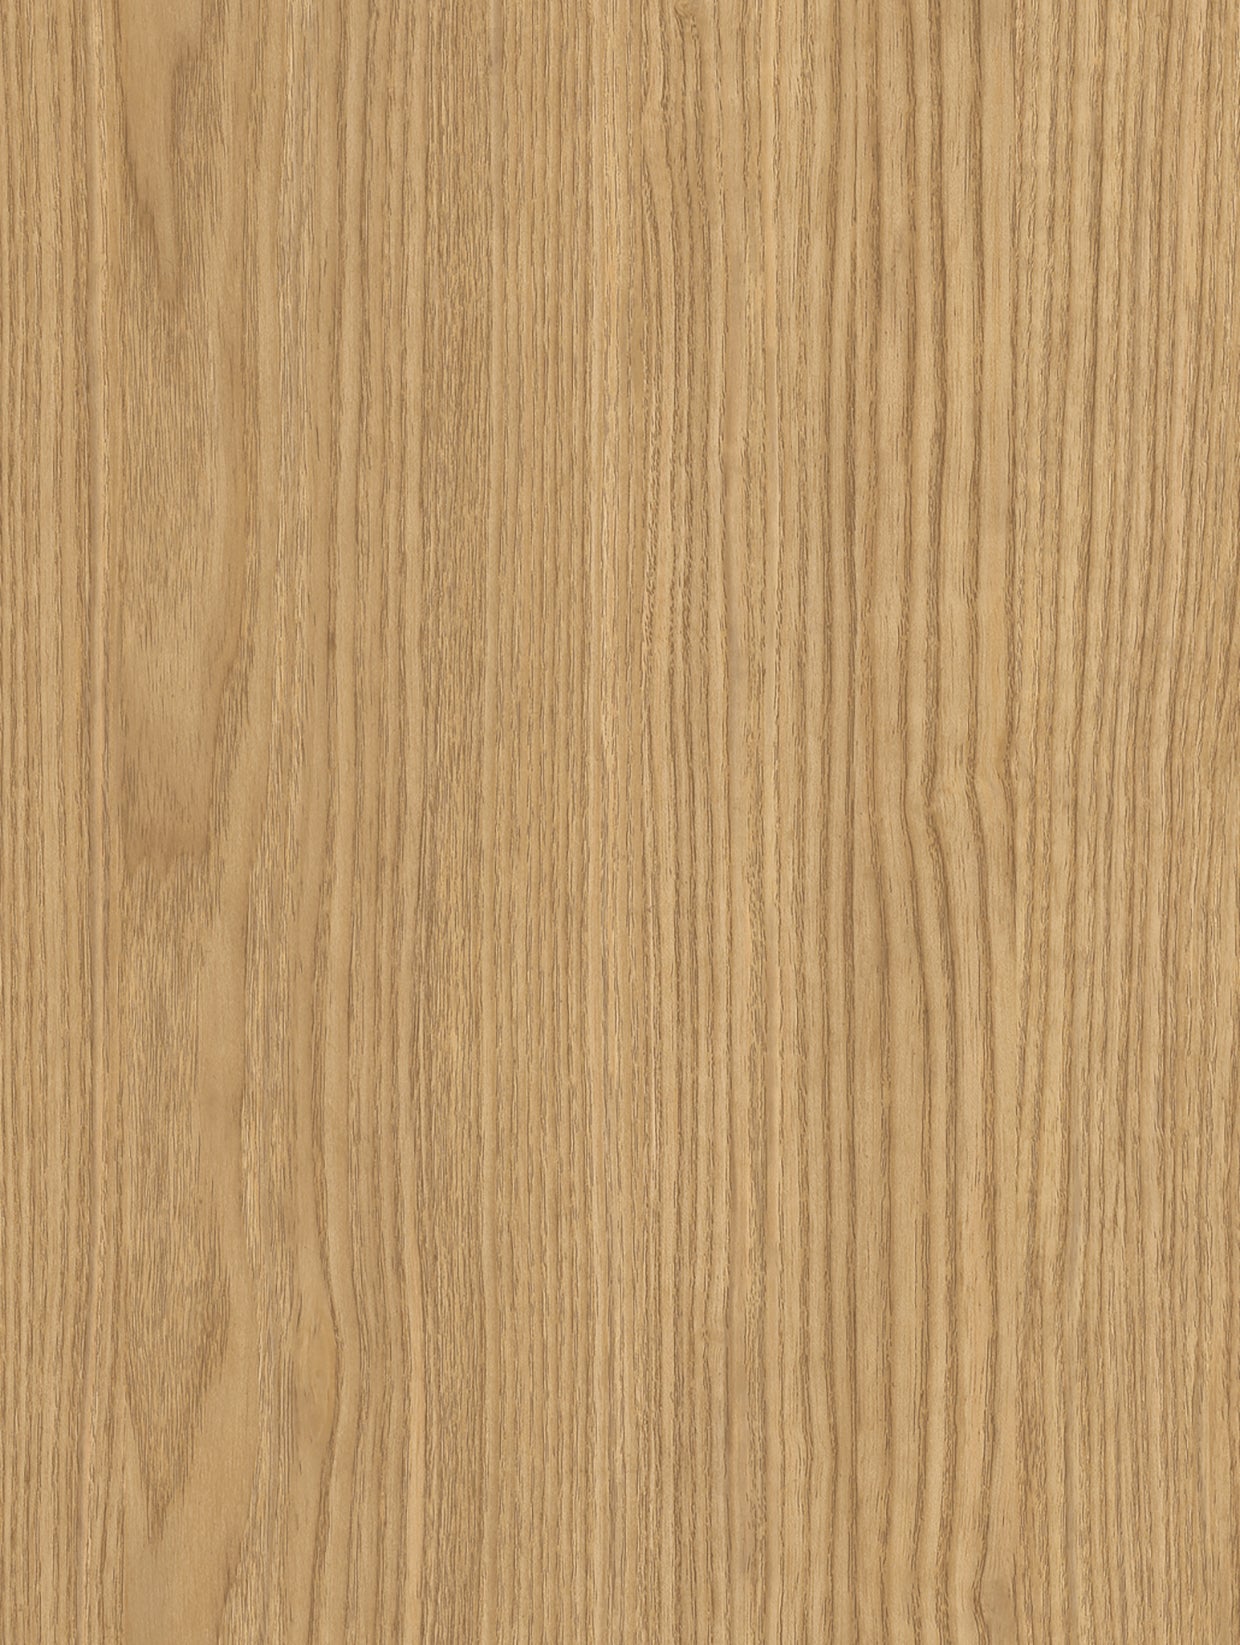 Wood-Medium | Holzdekor Mittel Rost/Soft/Strukturiert Möbelfolie Selbstklebende Tapete Vinyl Folie für Möbel Wand Regal (100x122cm)